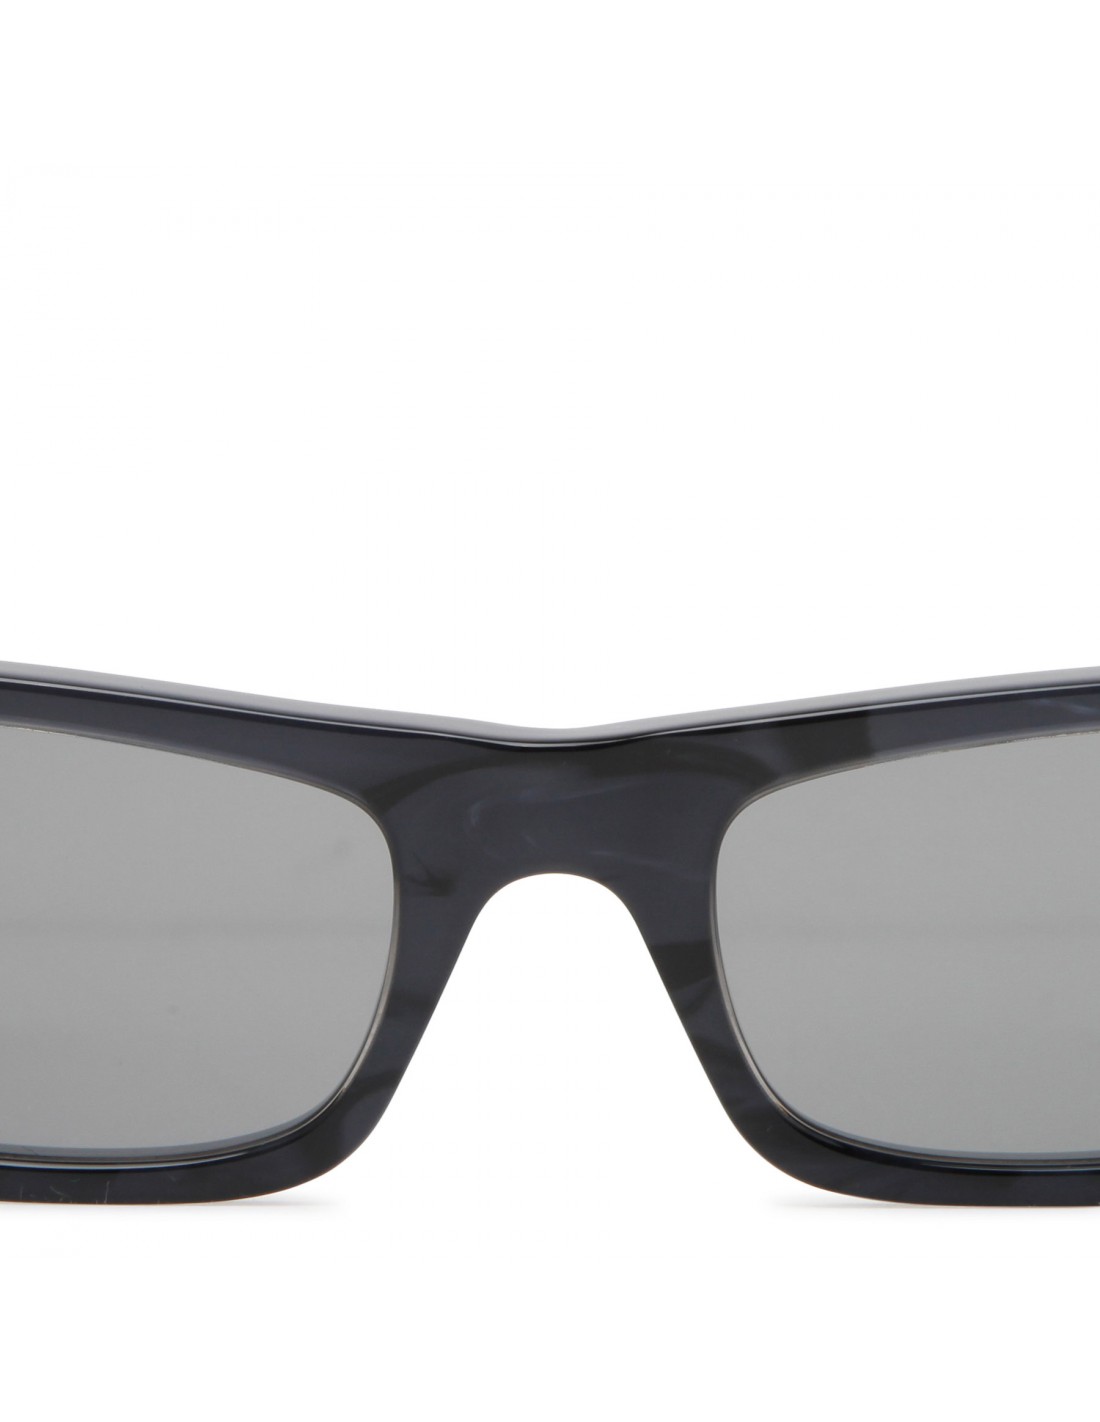 Black rectangular sunglasses